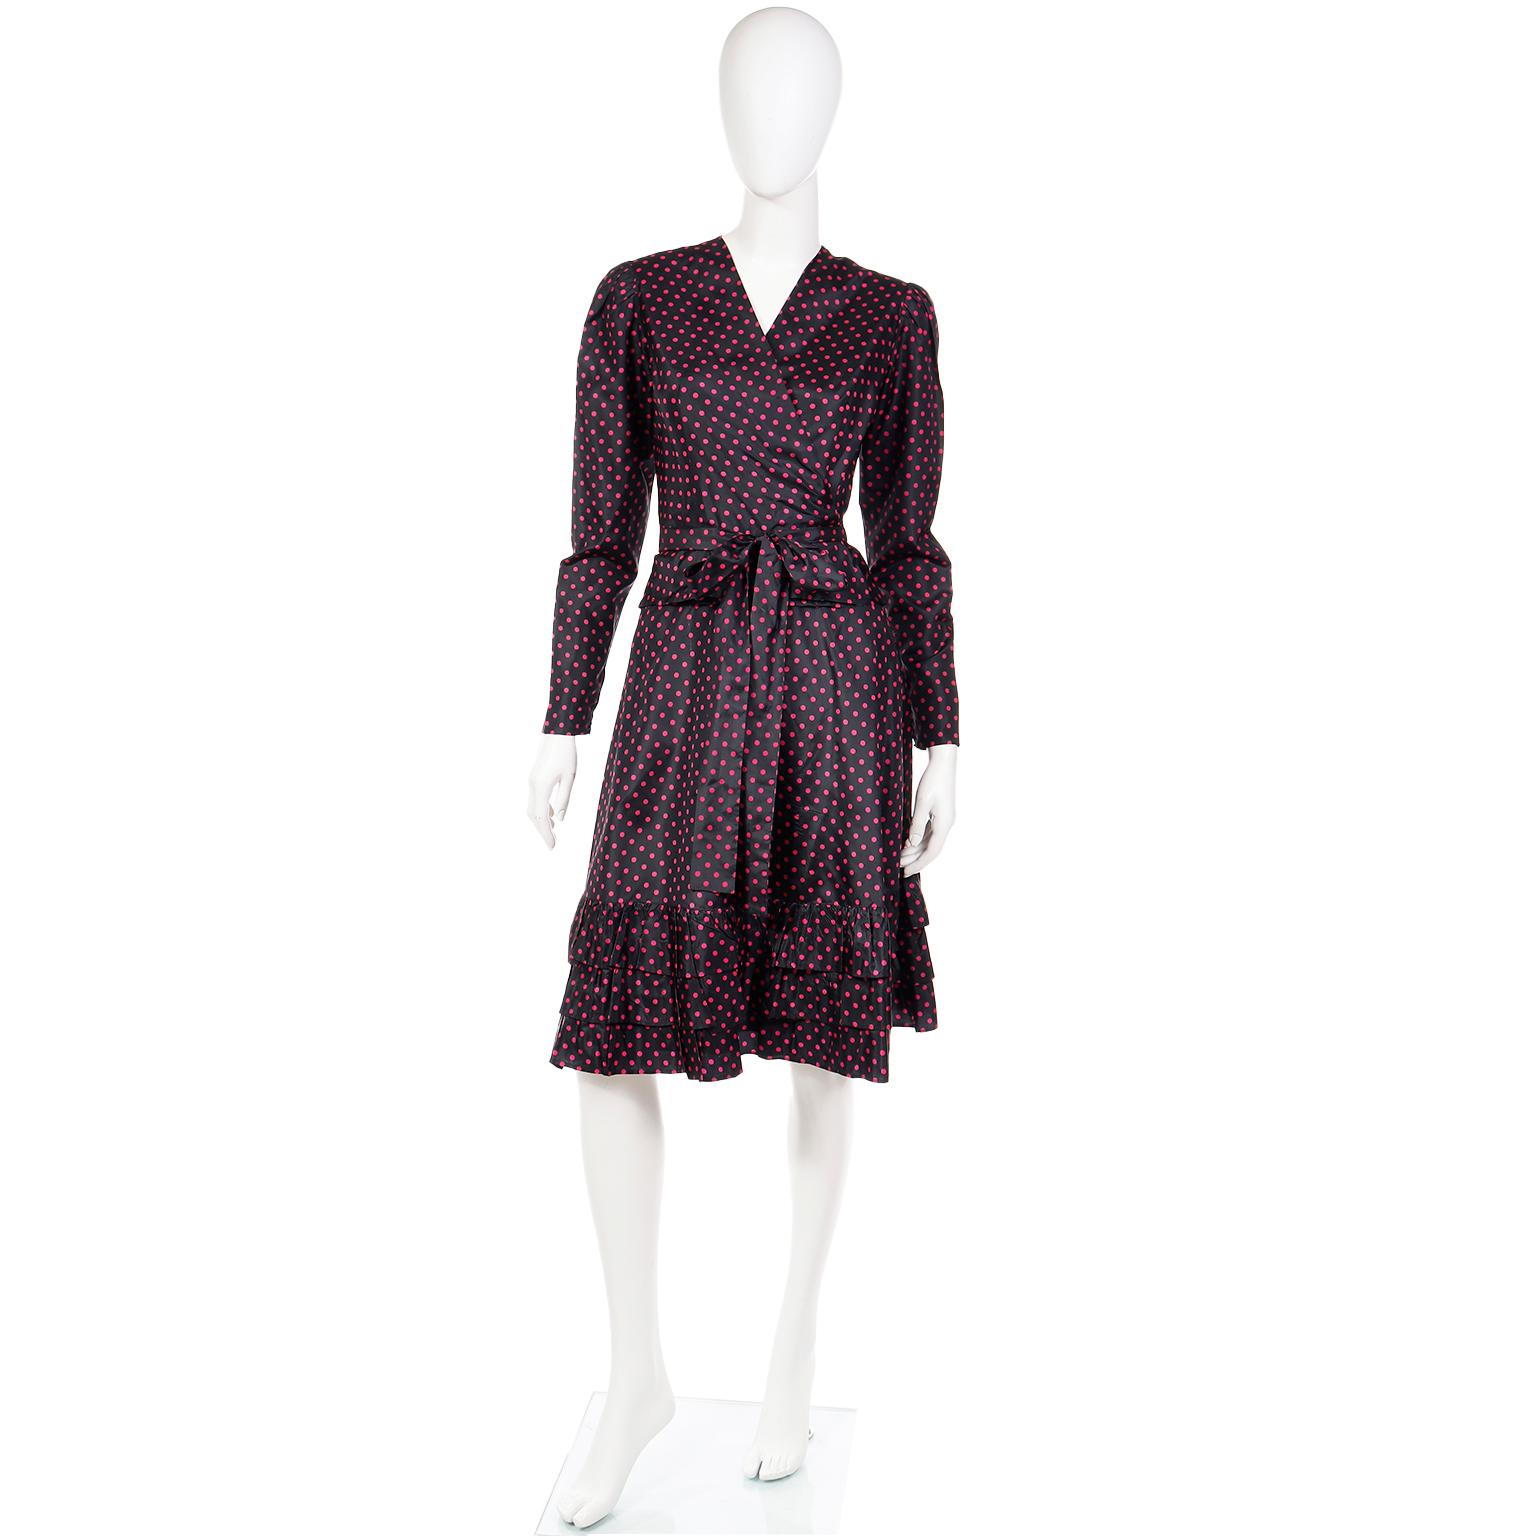 Dies ist eine schöne Vintage Yves Saint Laurent Ende der 1970er oder Anfang der 1980er Jahre 2 Stück Kleid in einem luxen schwarzen Taft mit rosa Tupfen. Dieses Kleid kann tagsüber oder abends getragen werden, je nach Accessoires.

Dieses Outfit